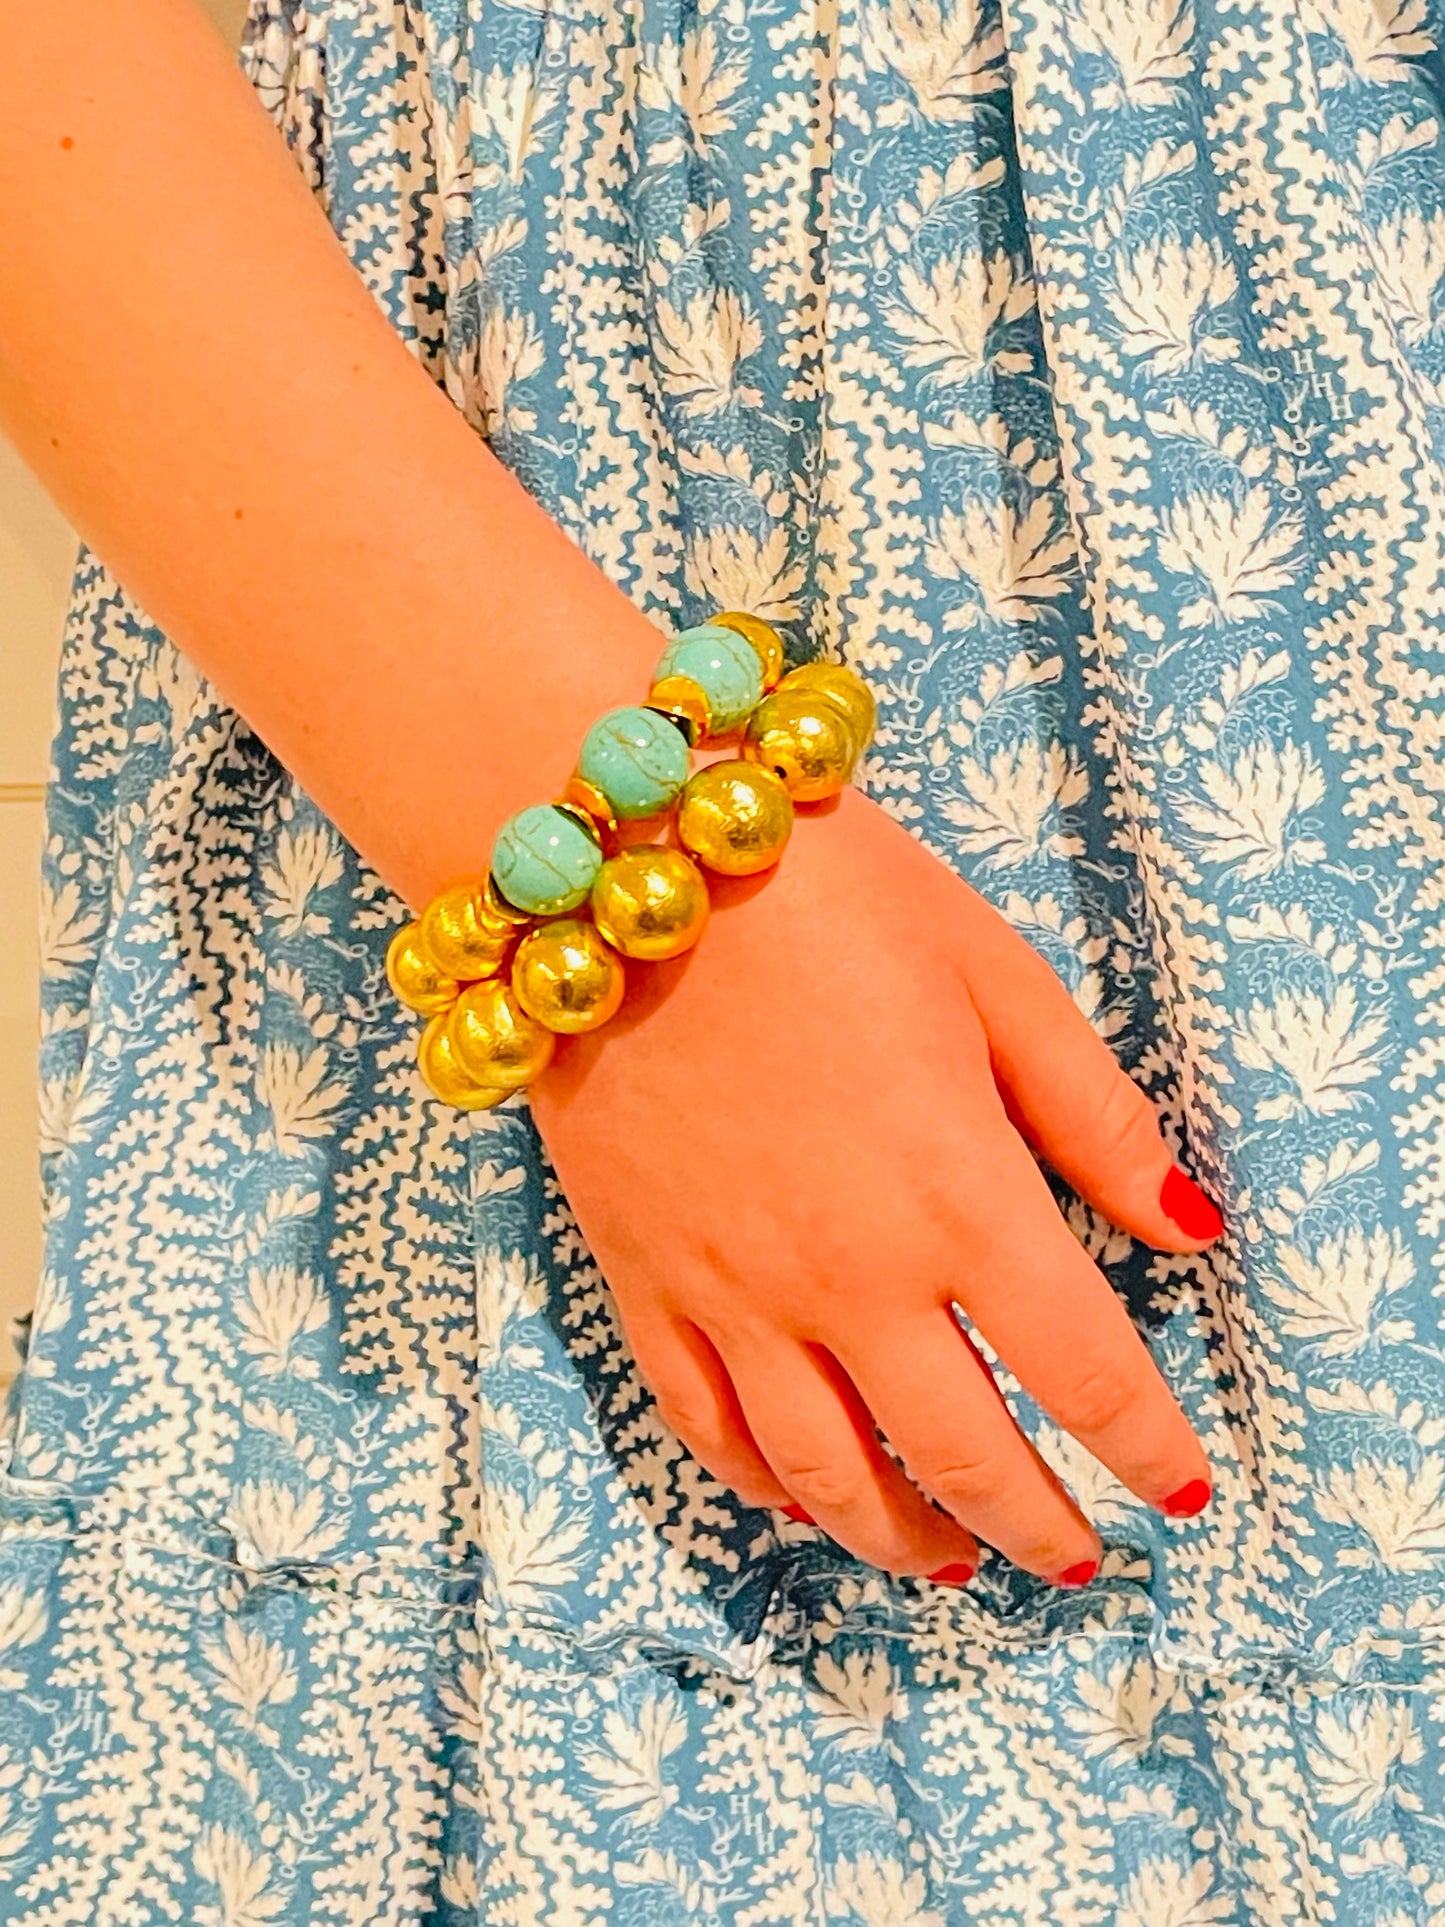 Turquoise Shell Bracelet